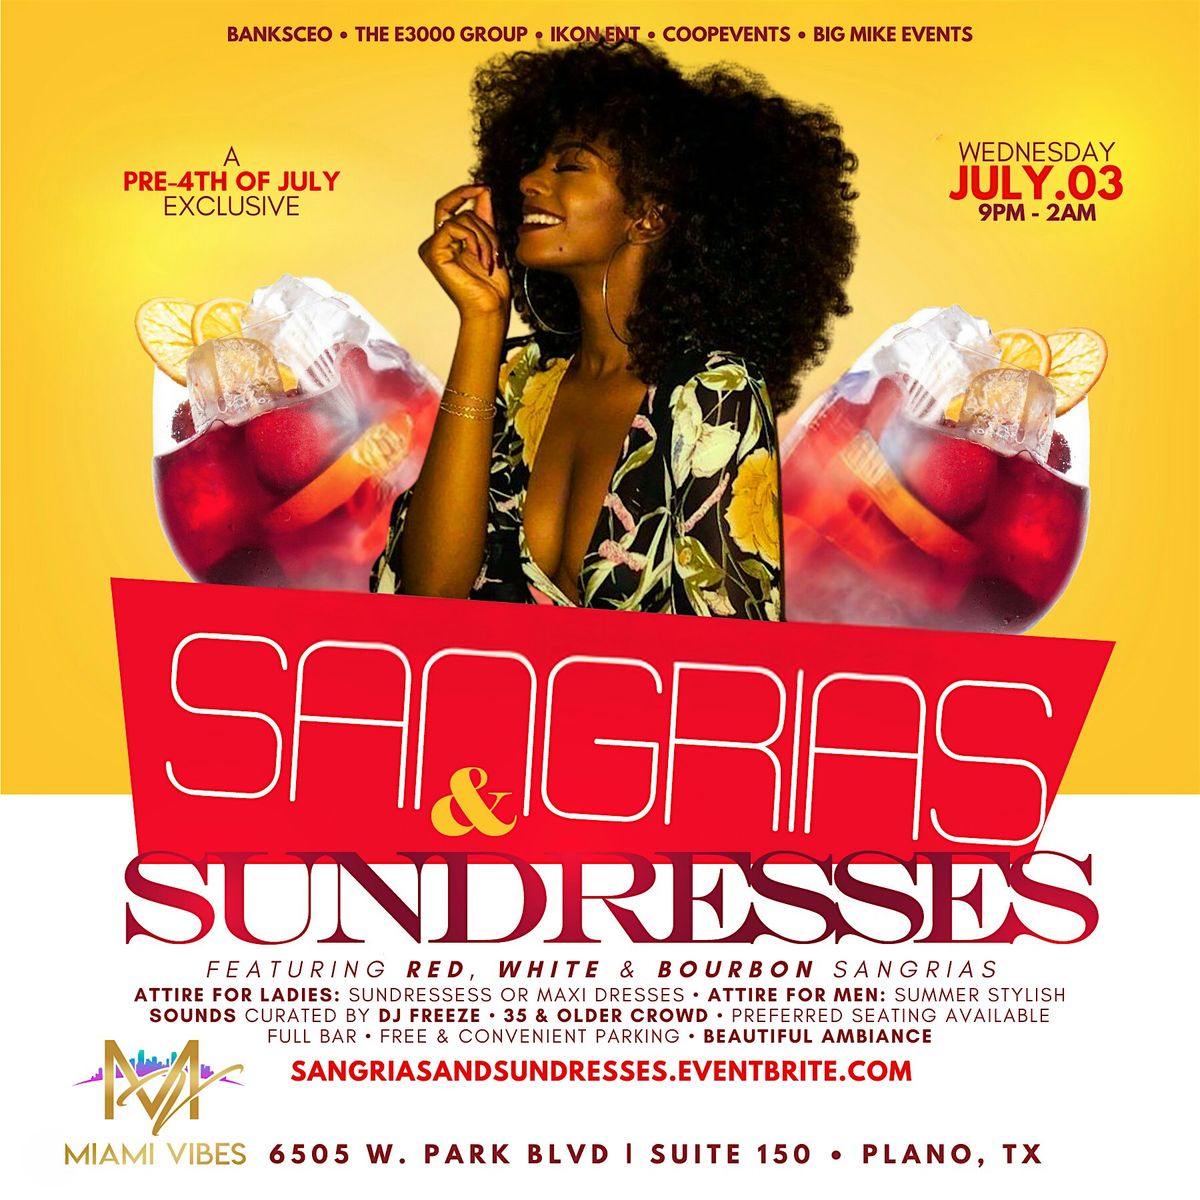 Sangrias & Sundresses - Pre-4th of July Affair @ MIAMI VIBES (Plano)